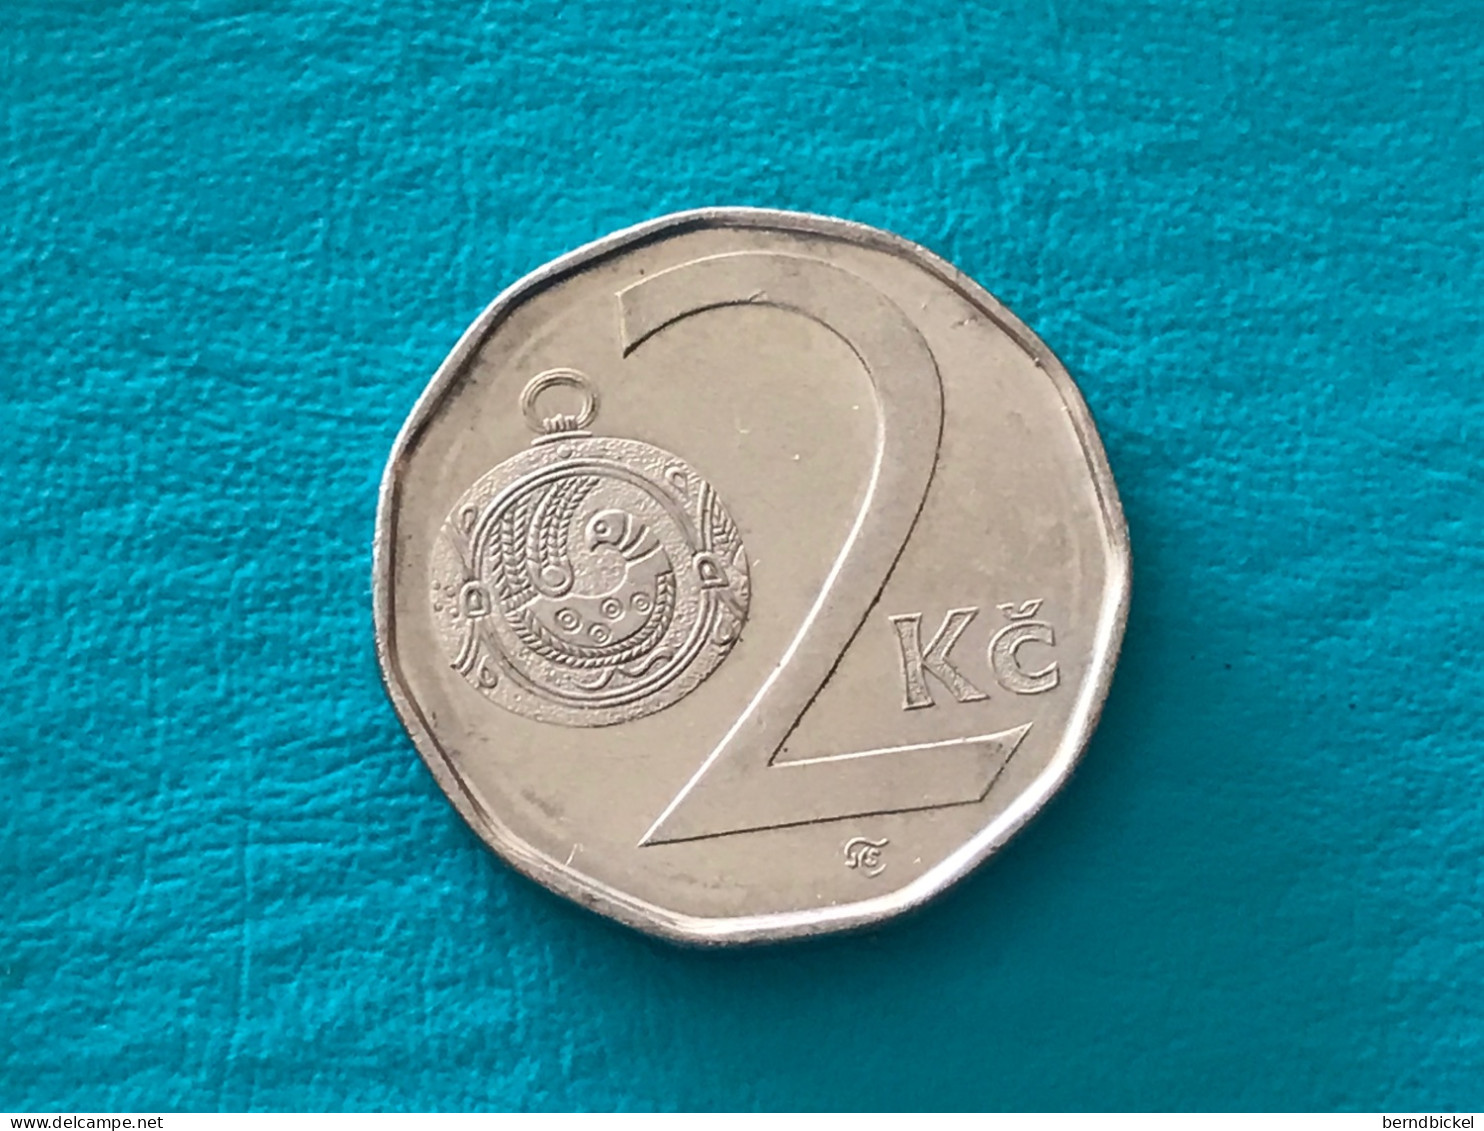 Münze Münzen Umlaufmünze Tschechien 2 Koruna 2001 - Tschechische Rep.